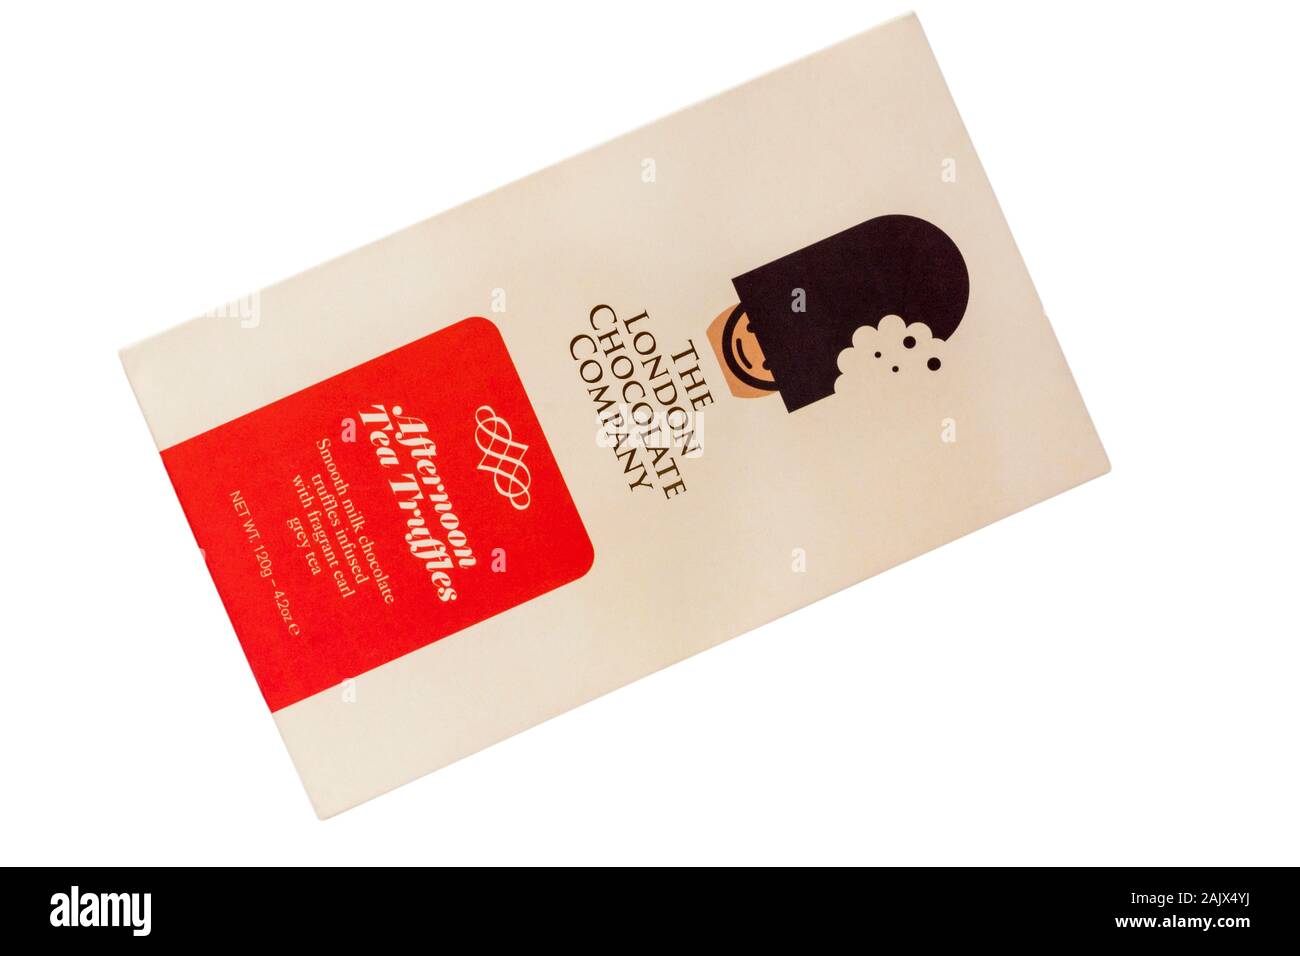 Die Londoner Chocolate Company nachmittags Tee Trüffel glatte Milchschokolade Trüffel mit duftenden Earl Grey Tee auf weißem Hintergrund infundiert Stockfoto